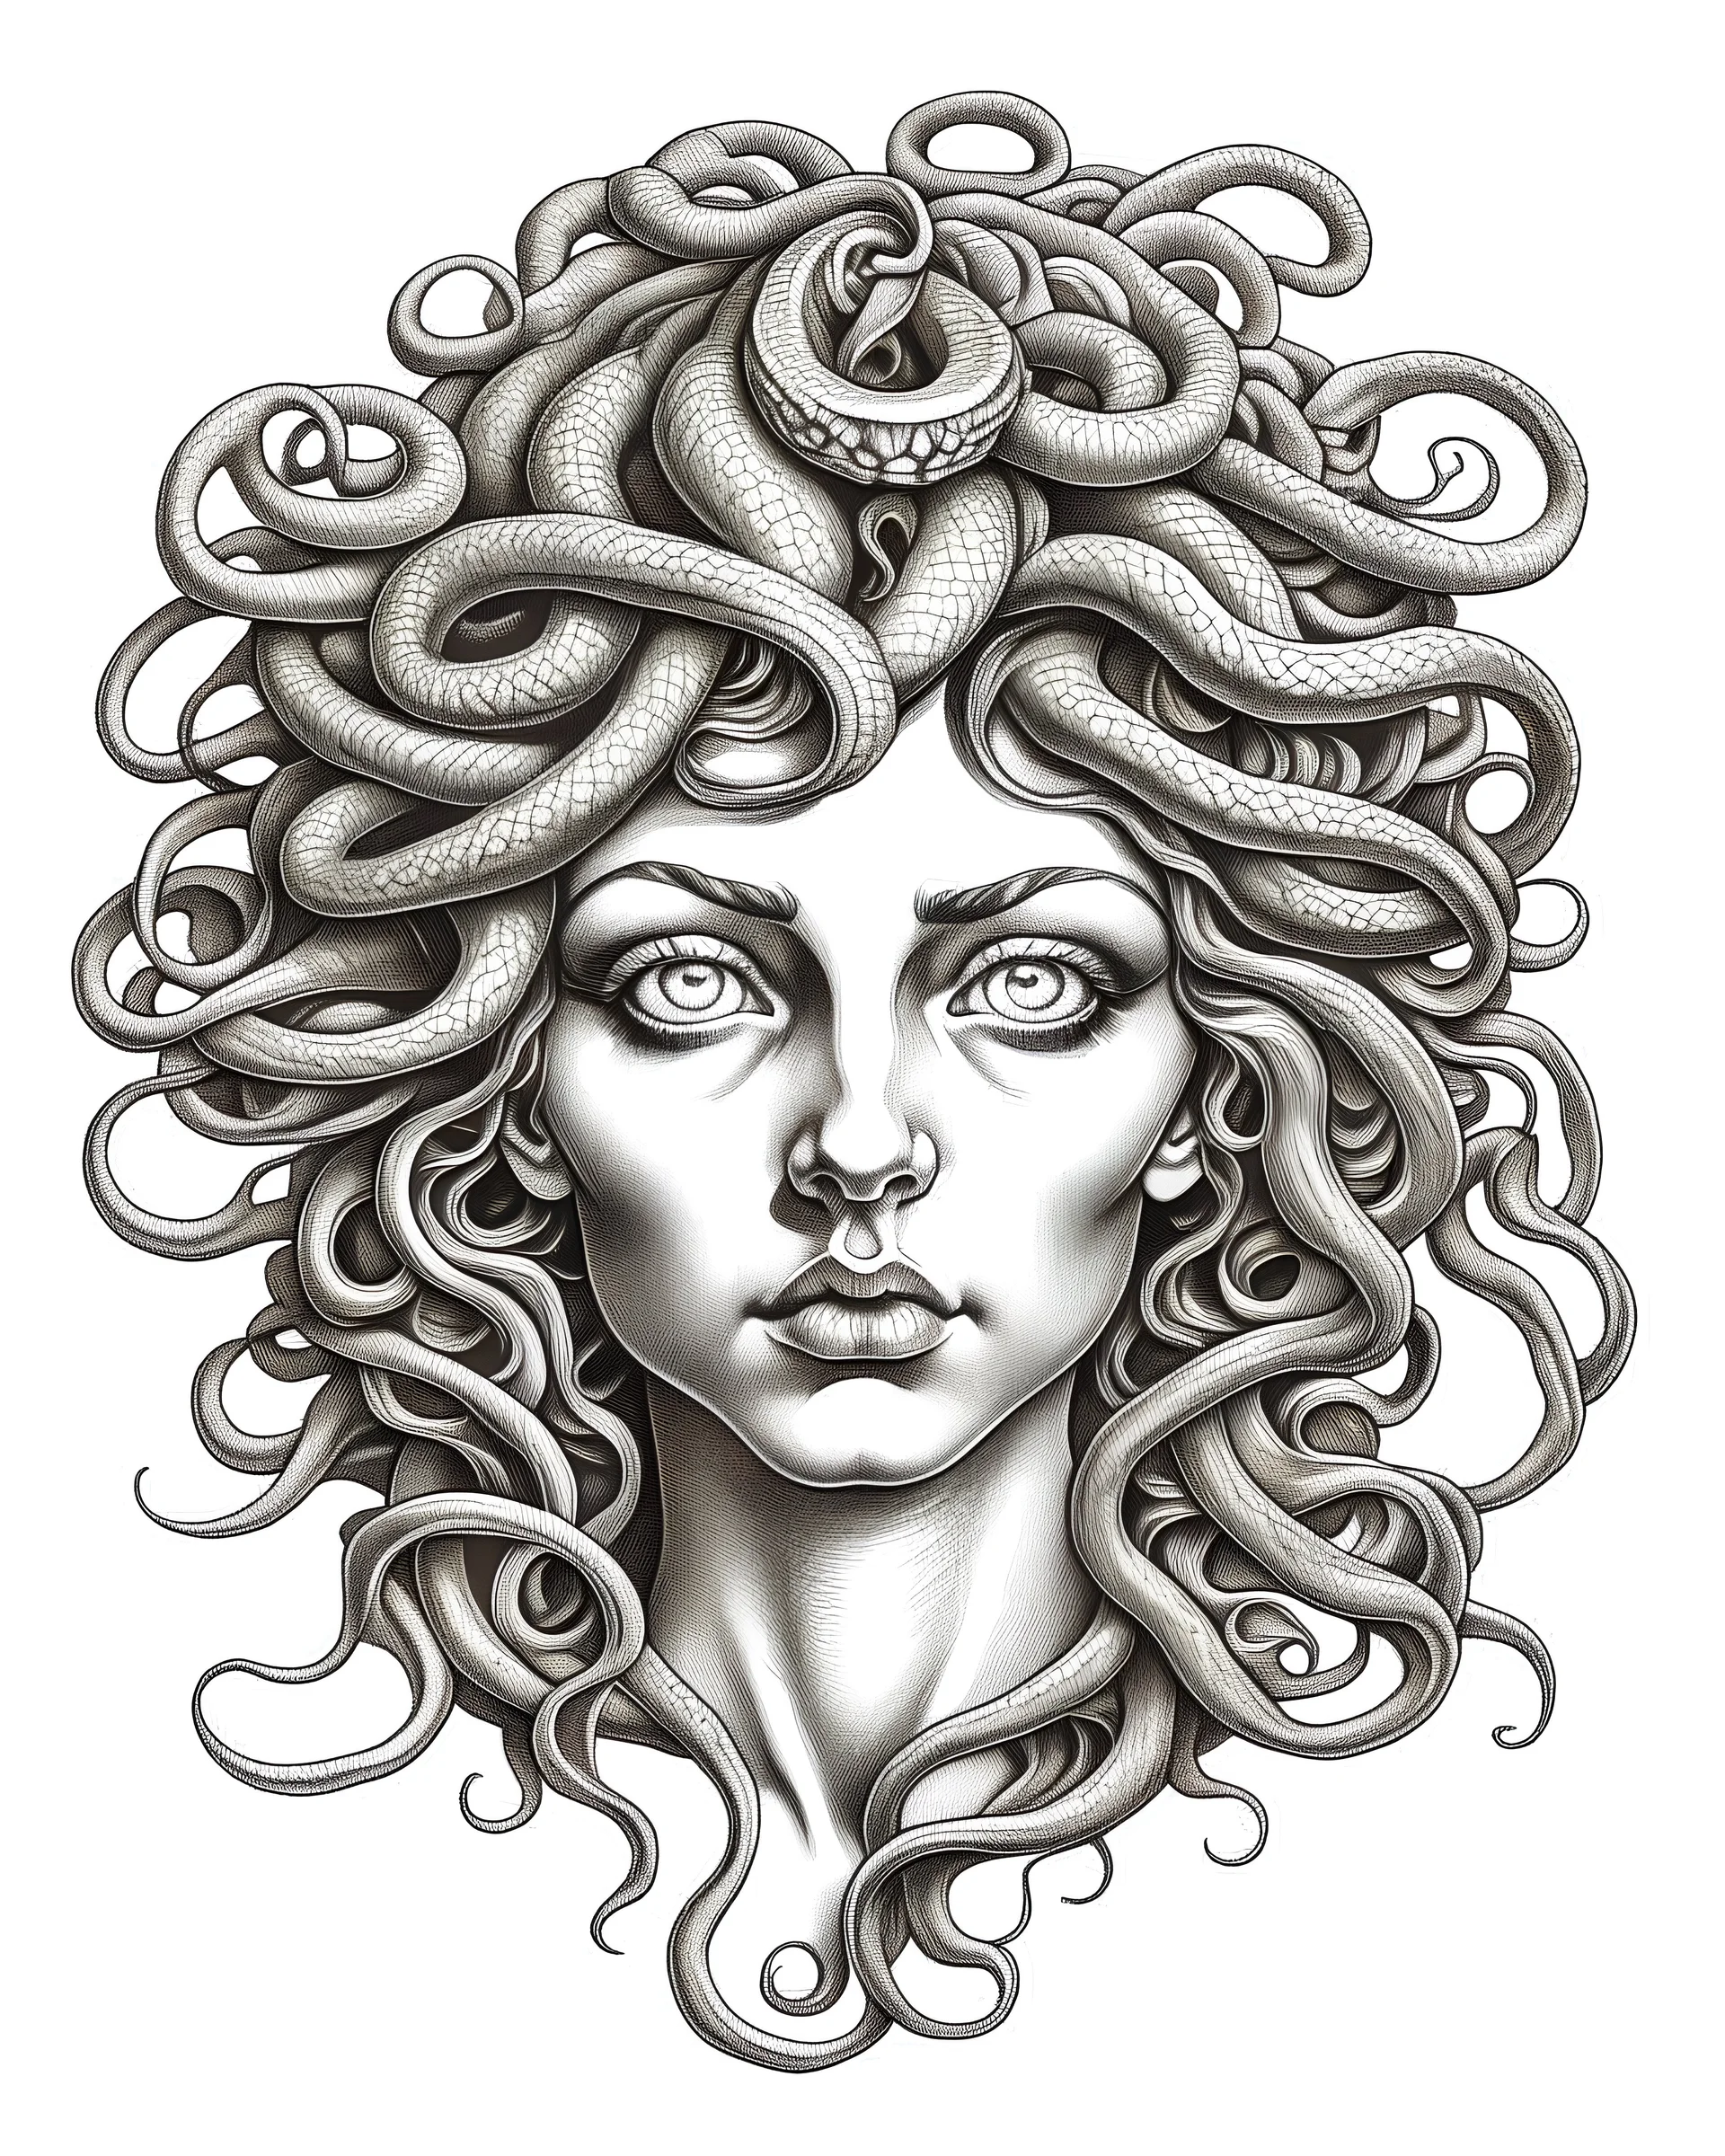 Medusa's petrifying gaze., realistis tatto sketch style, white background, profesional tatto sketch